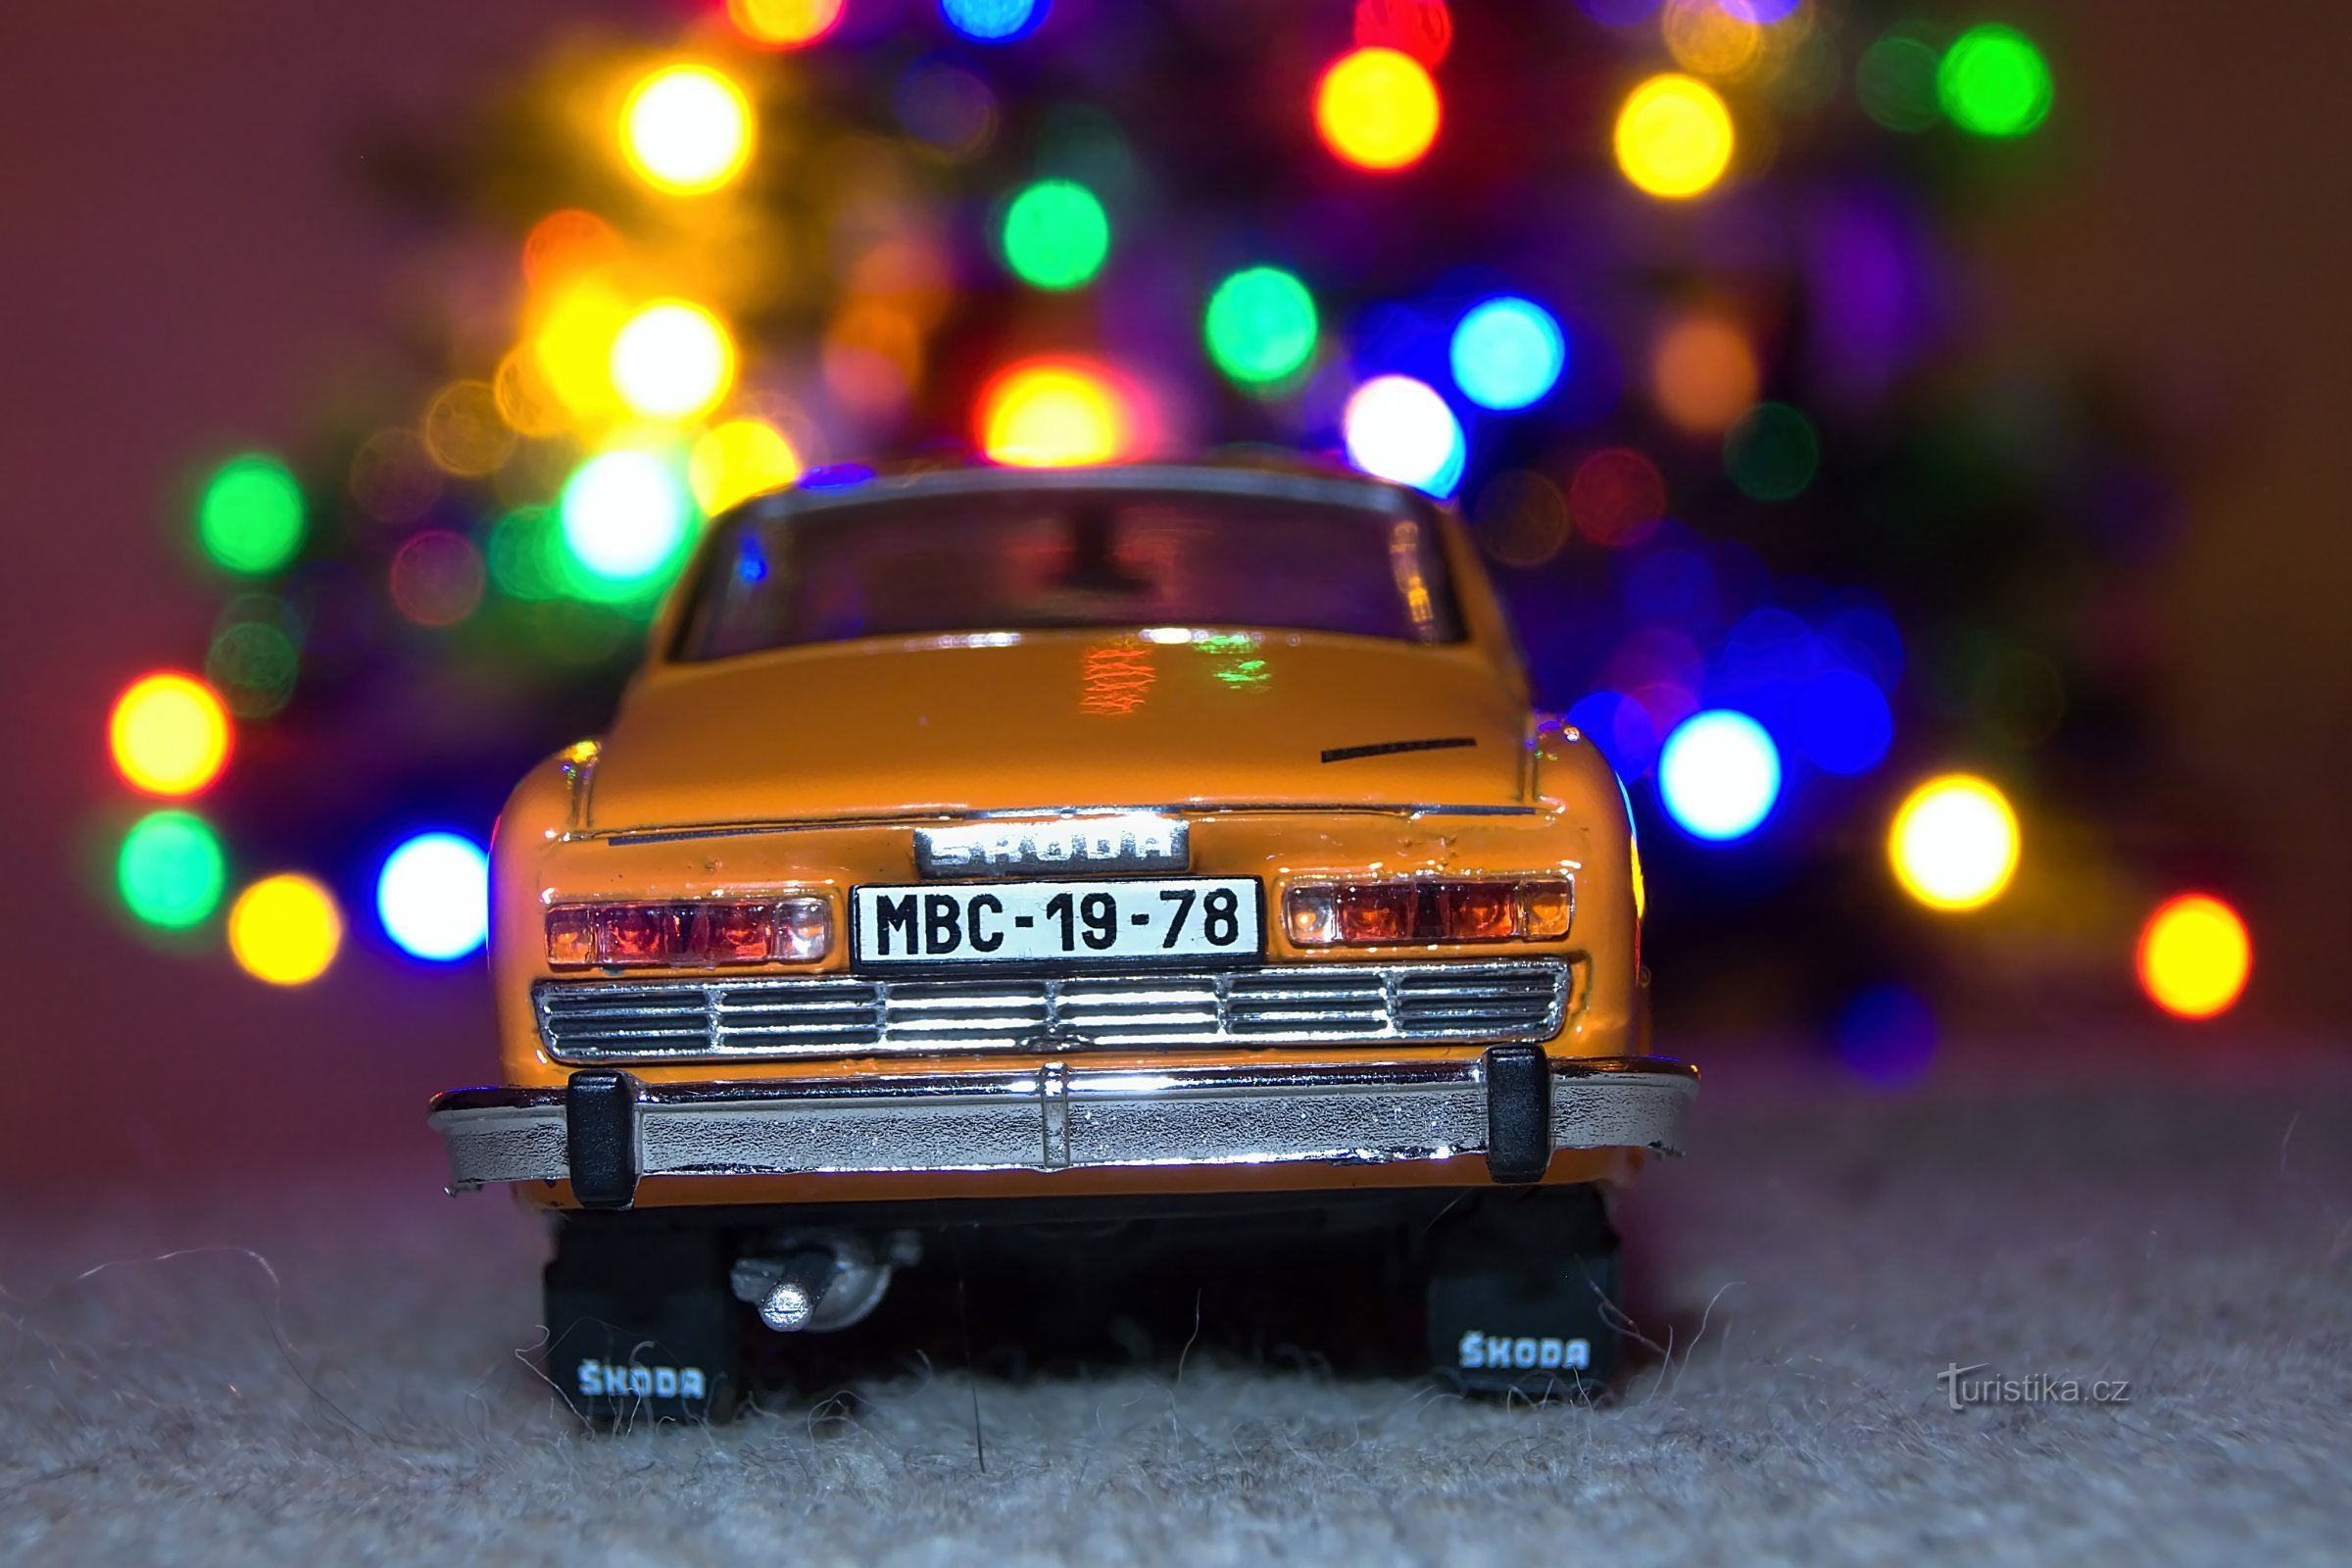 斯柯达 110R 在圣诞树旁的凳子上。